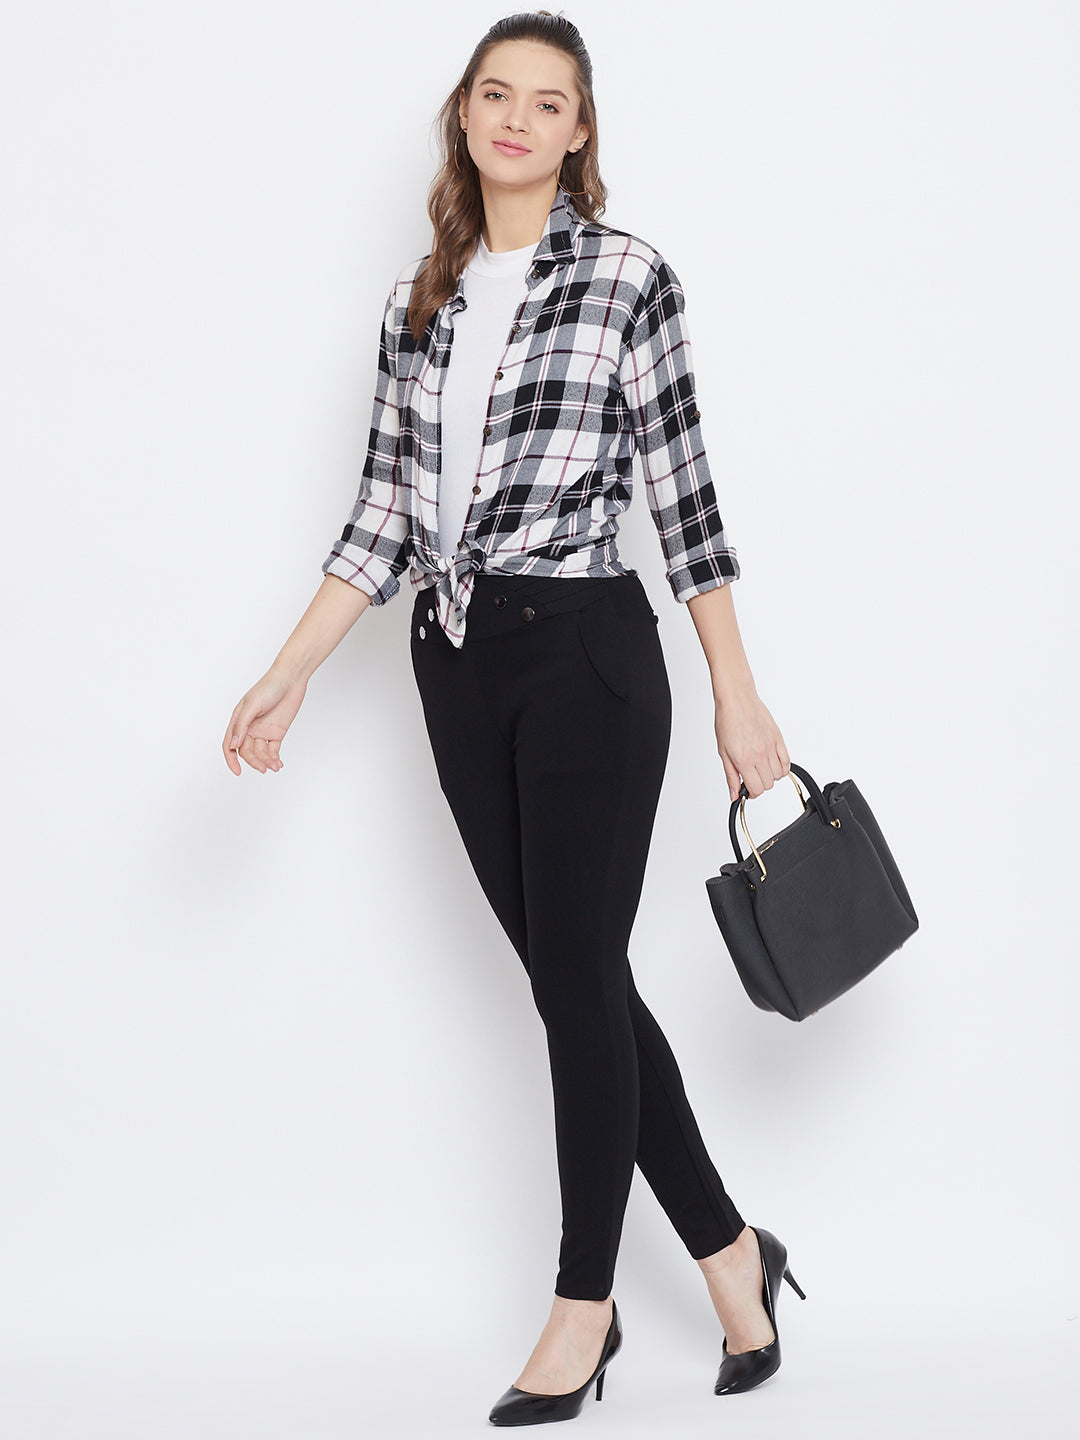 Wahe-NOOR Women's Black Solid Skinny Fit Jeggings - Distacart